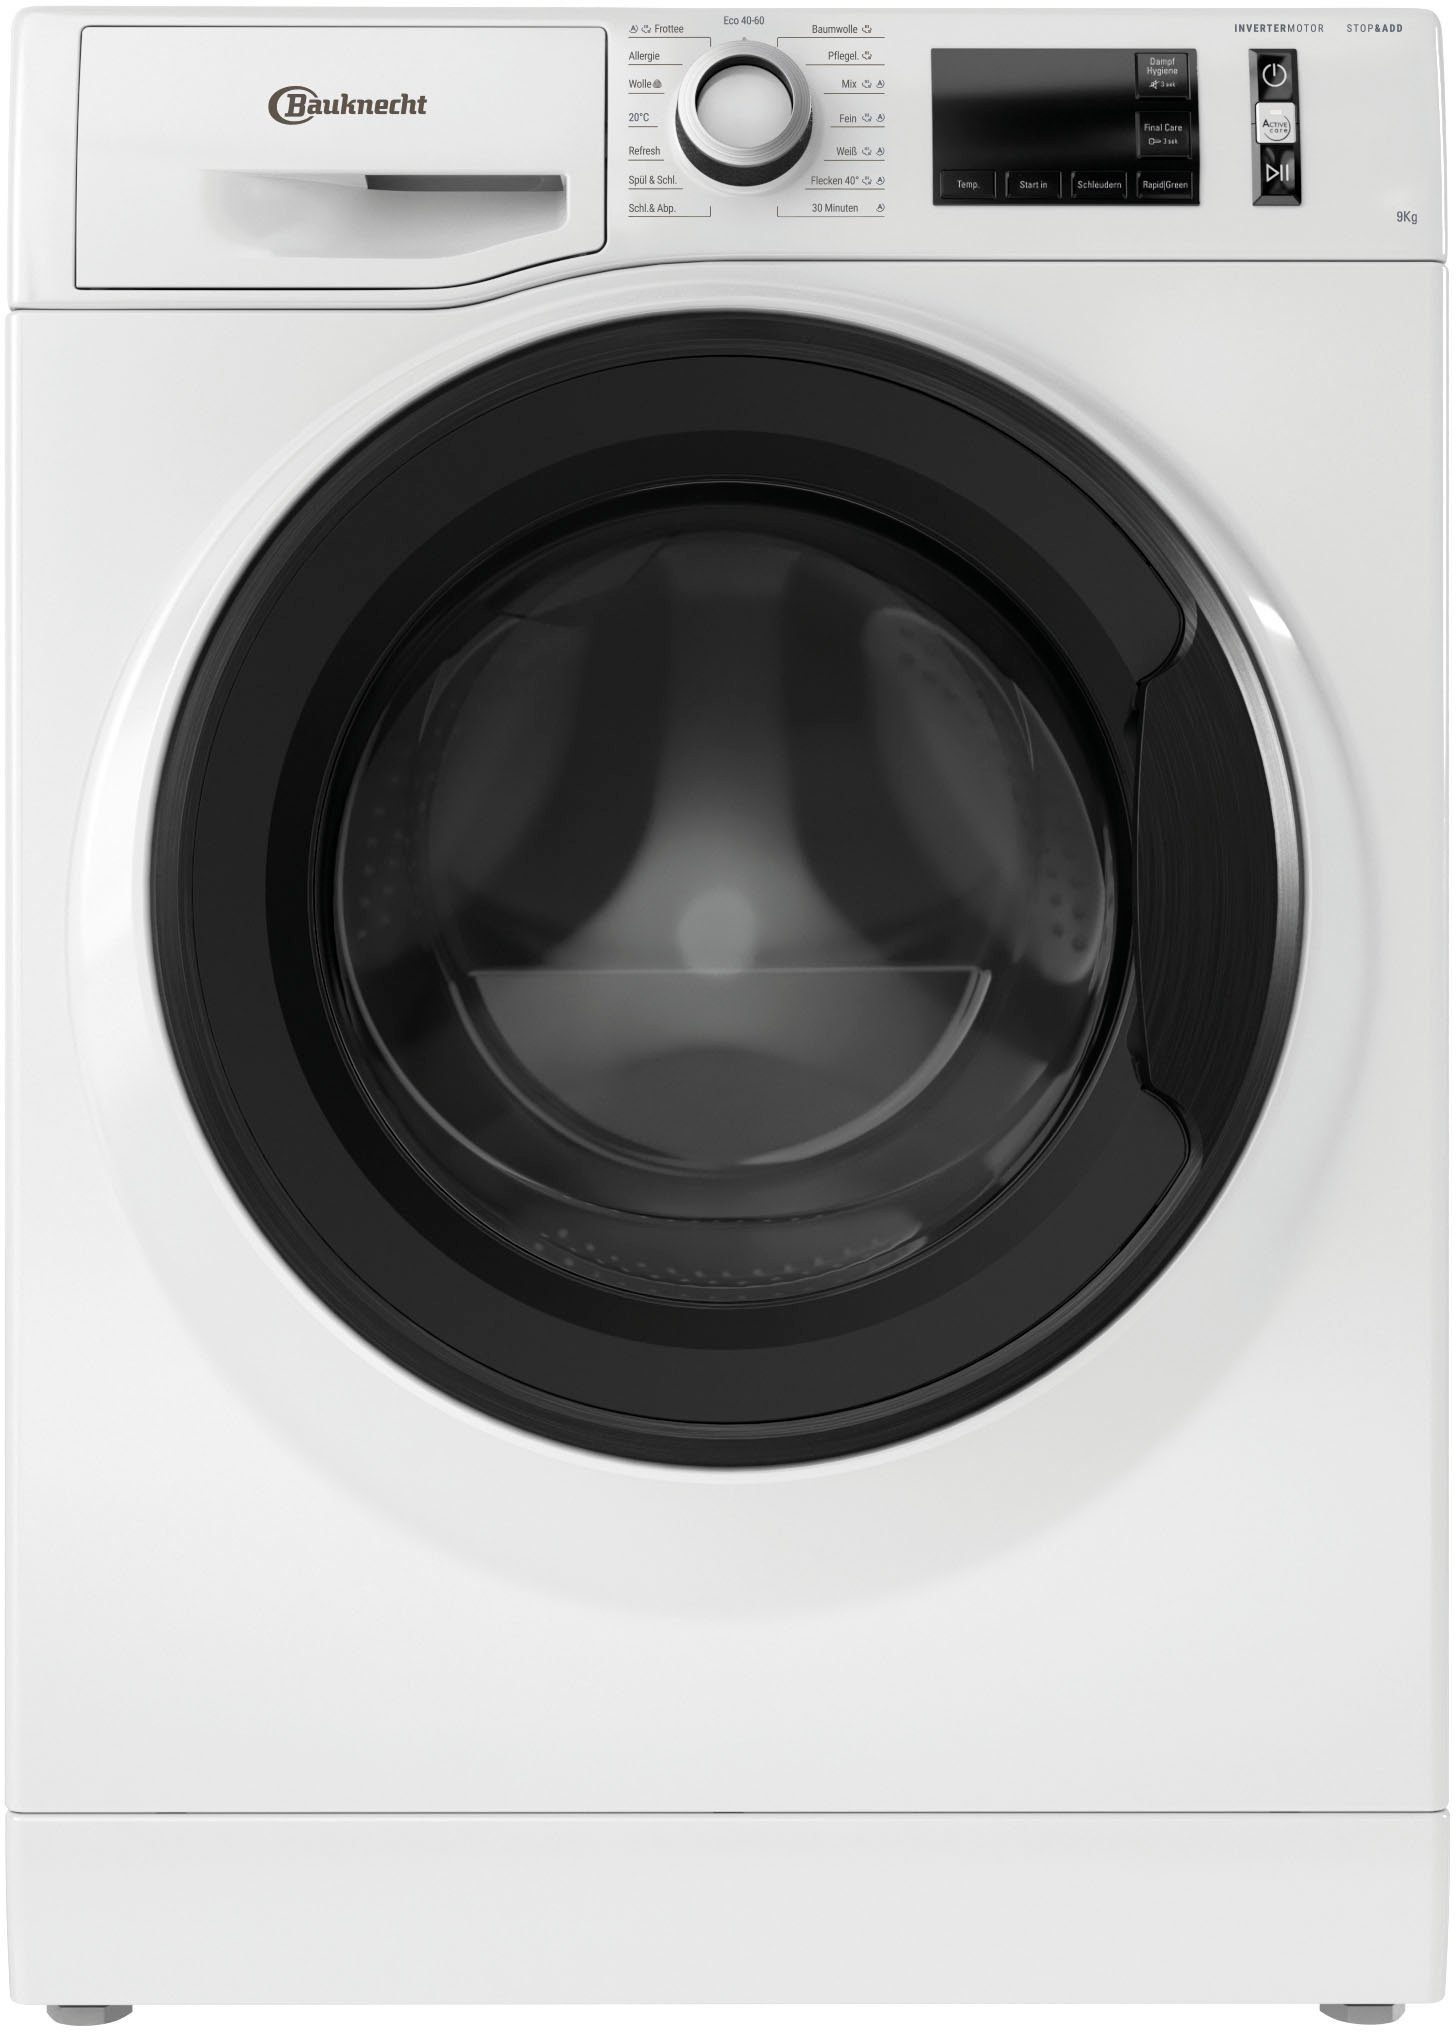 BAUKNECHT Waschmaschine WM PURE 1400 9A, U/min kg, 9